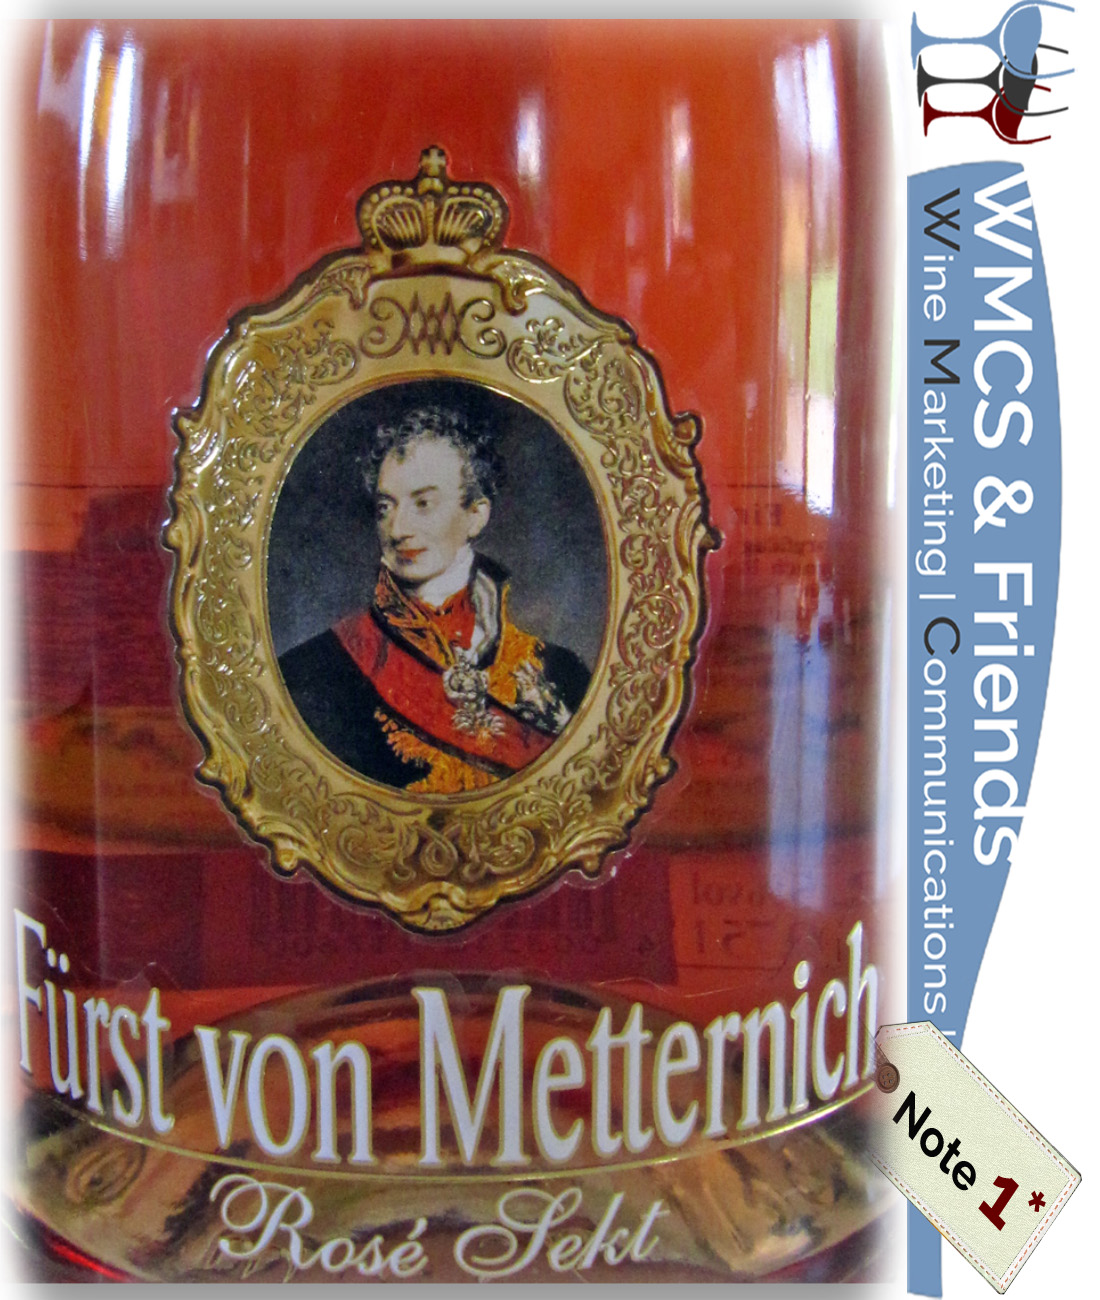 Fürst von Metternich Spätburgunder Rosé-Sekt